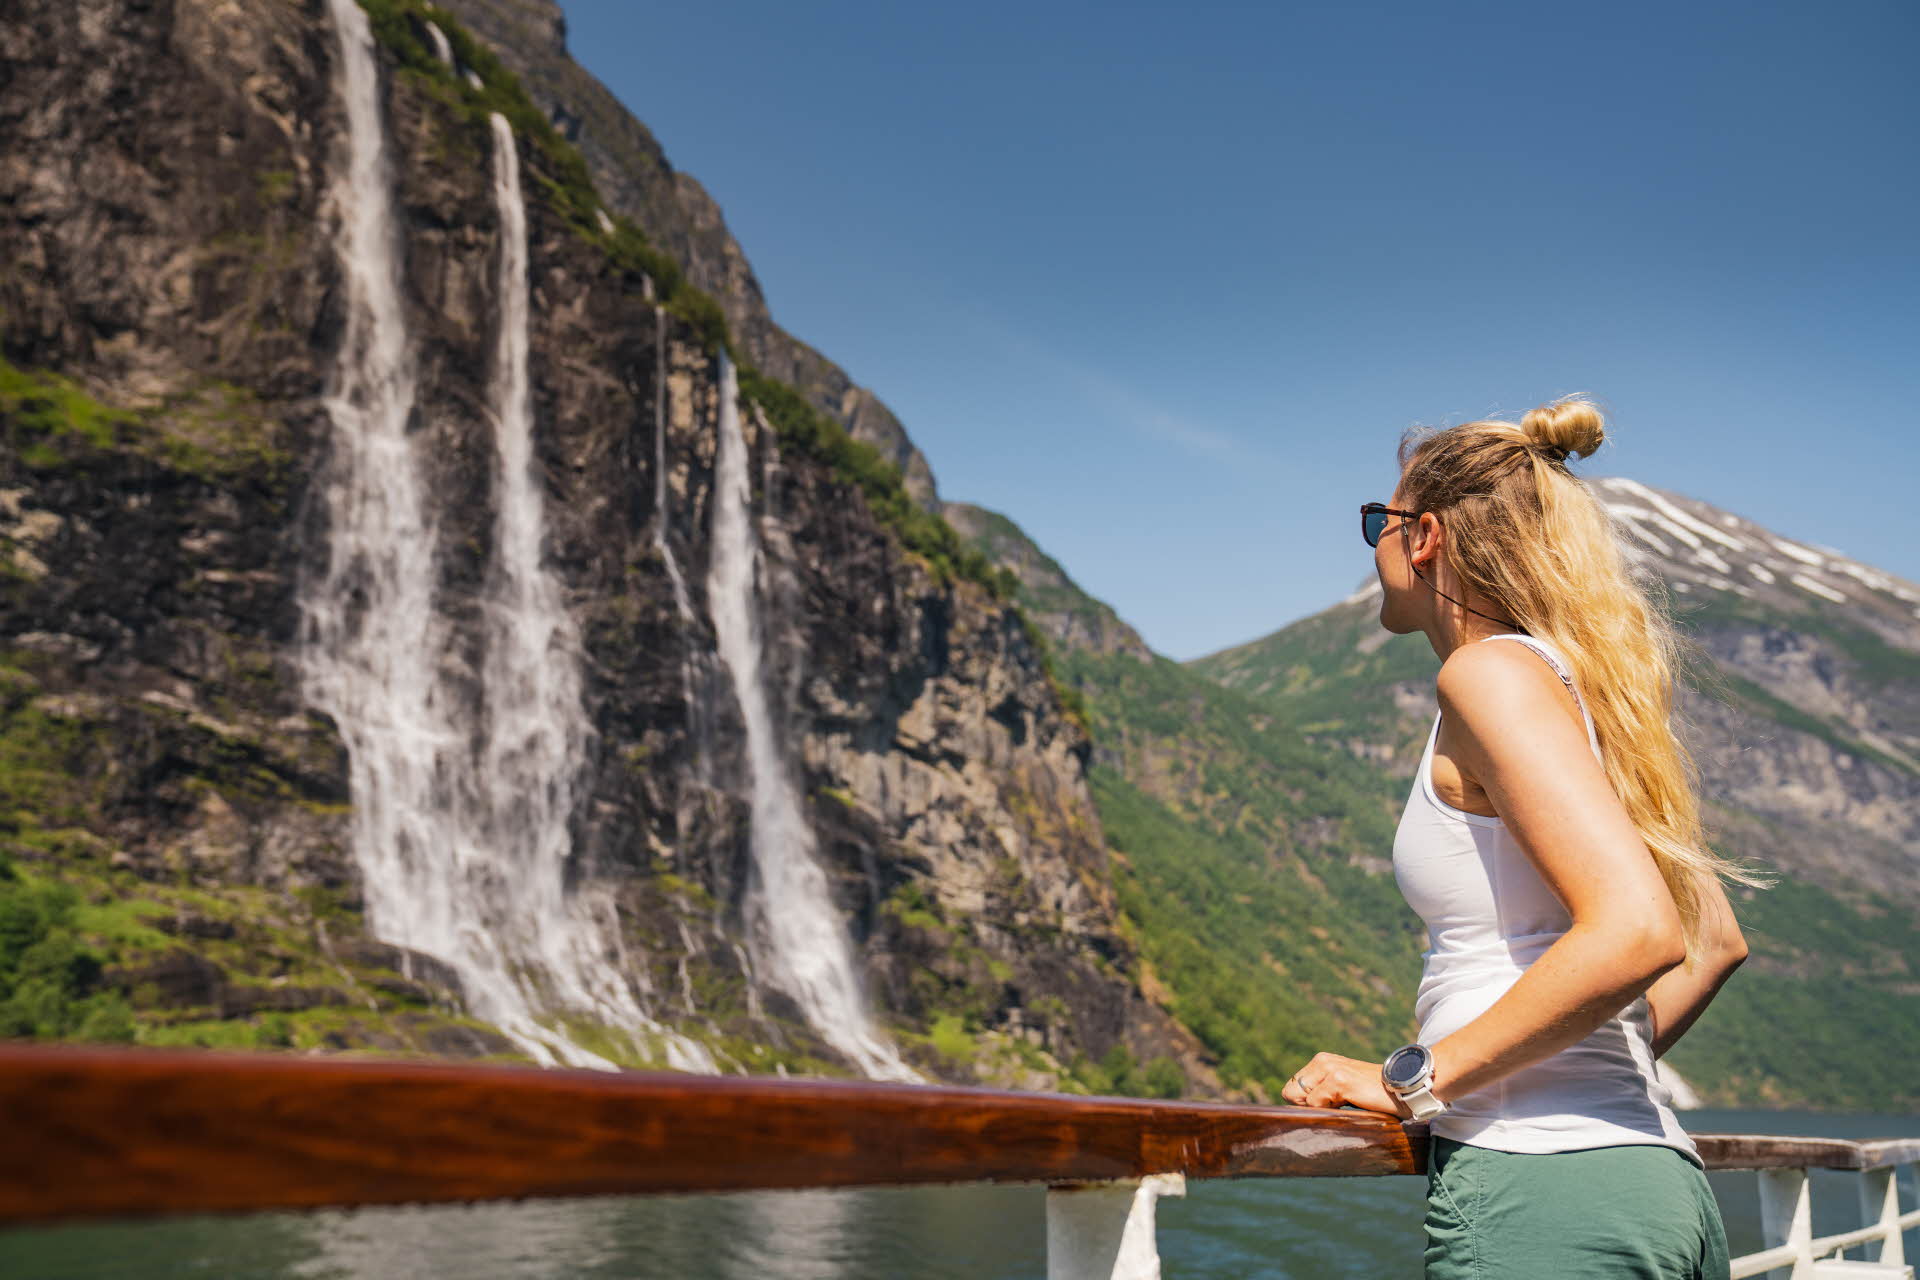 ボートの手すりにつかまってガイランゲルフィヨルドの滝を見上げる横から見た女性